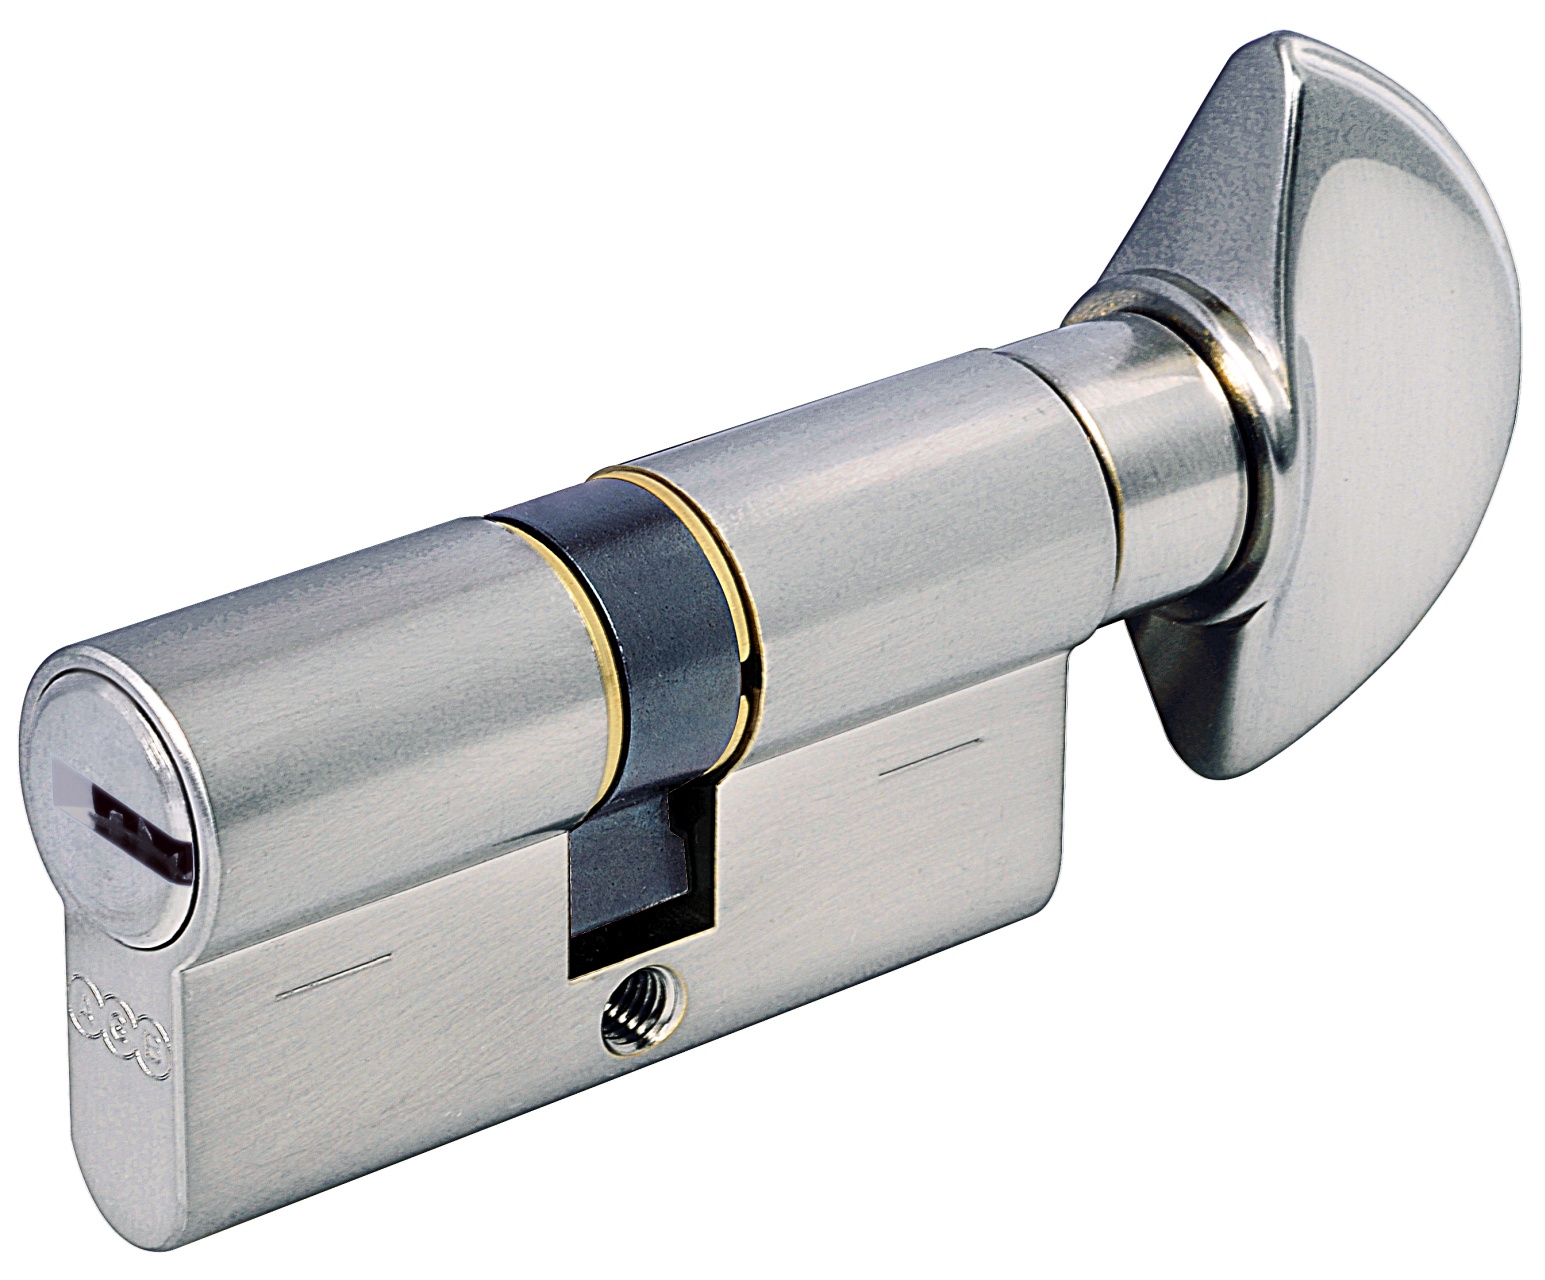 AGB -  Cilindro SCUDO 5000 PS frizionato anti bamping con chiave e pomolo - col. LUCIDO VERNICIATO - lunghezza 115 - misura P-40-10-65